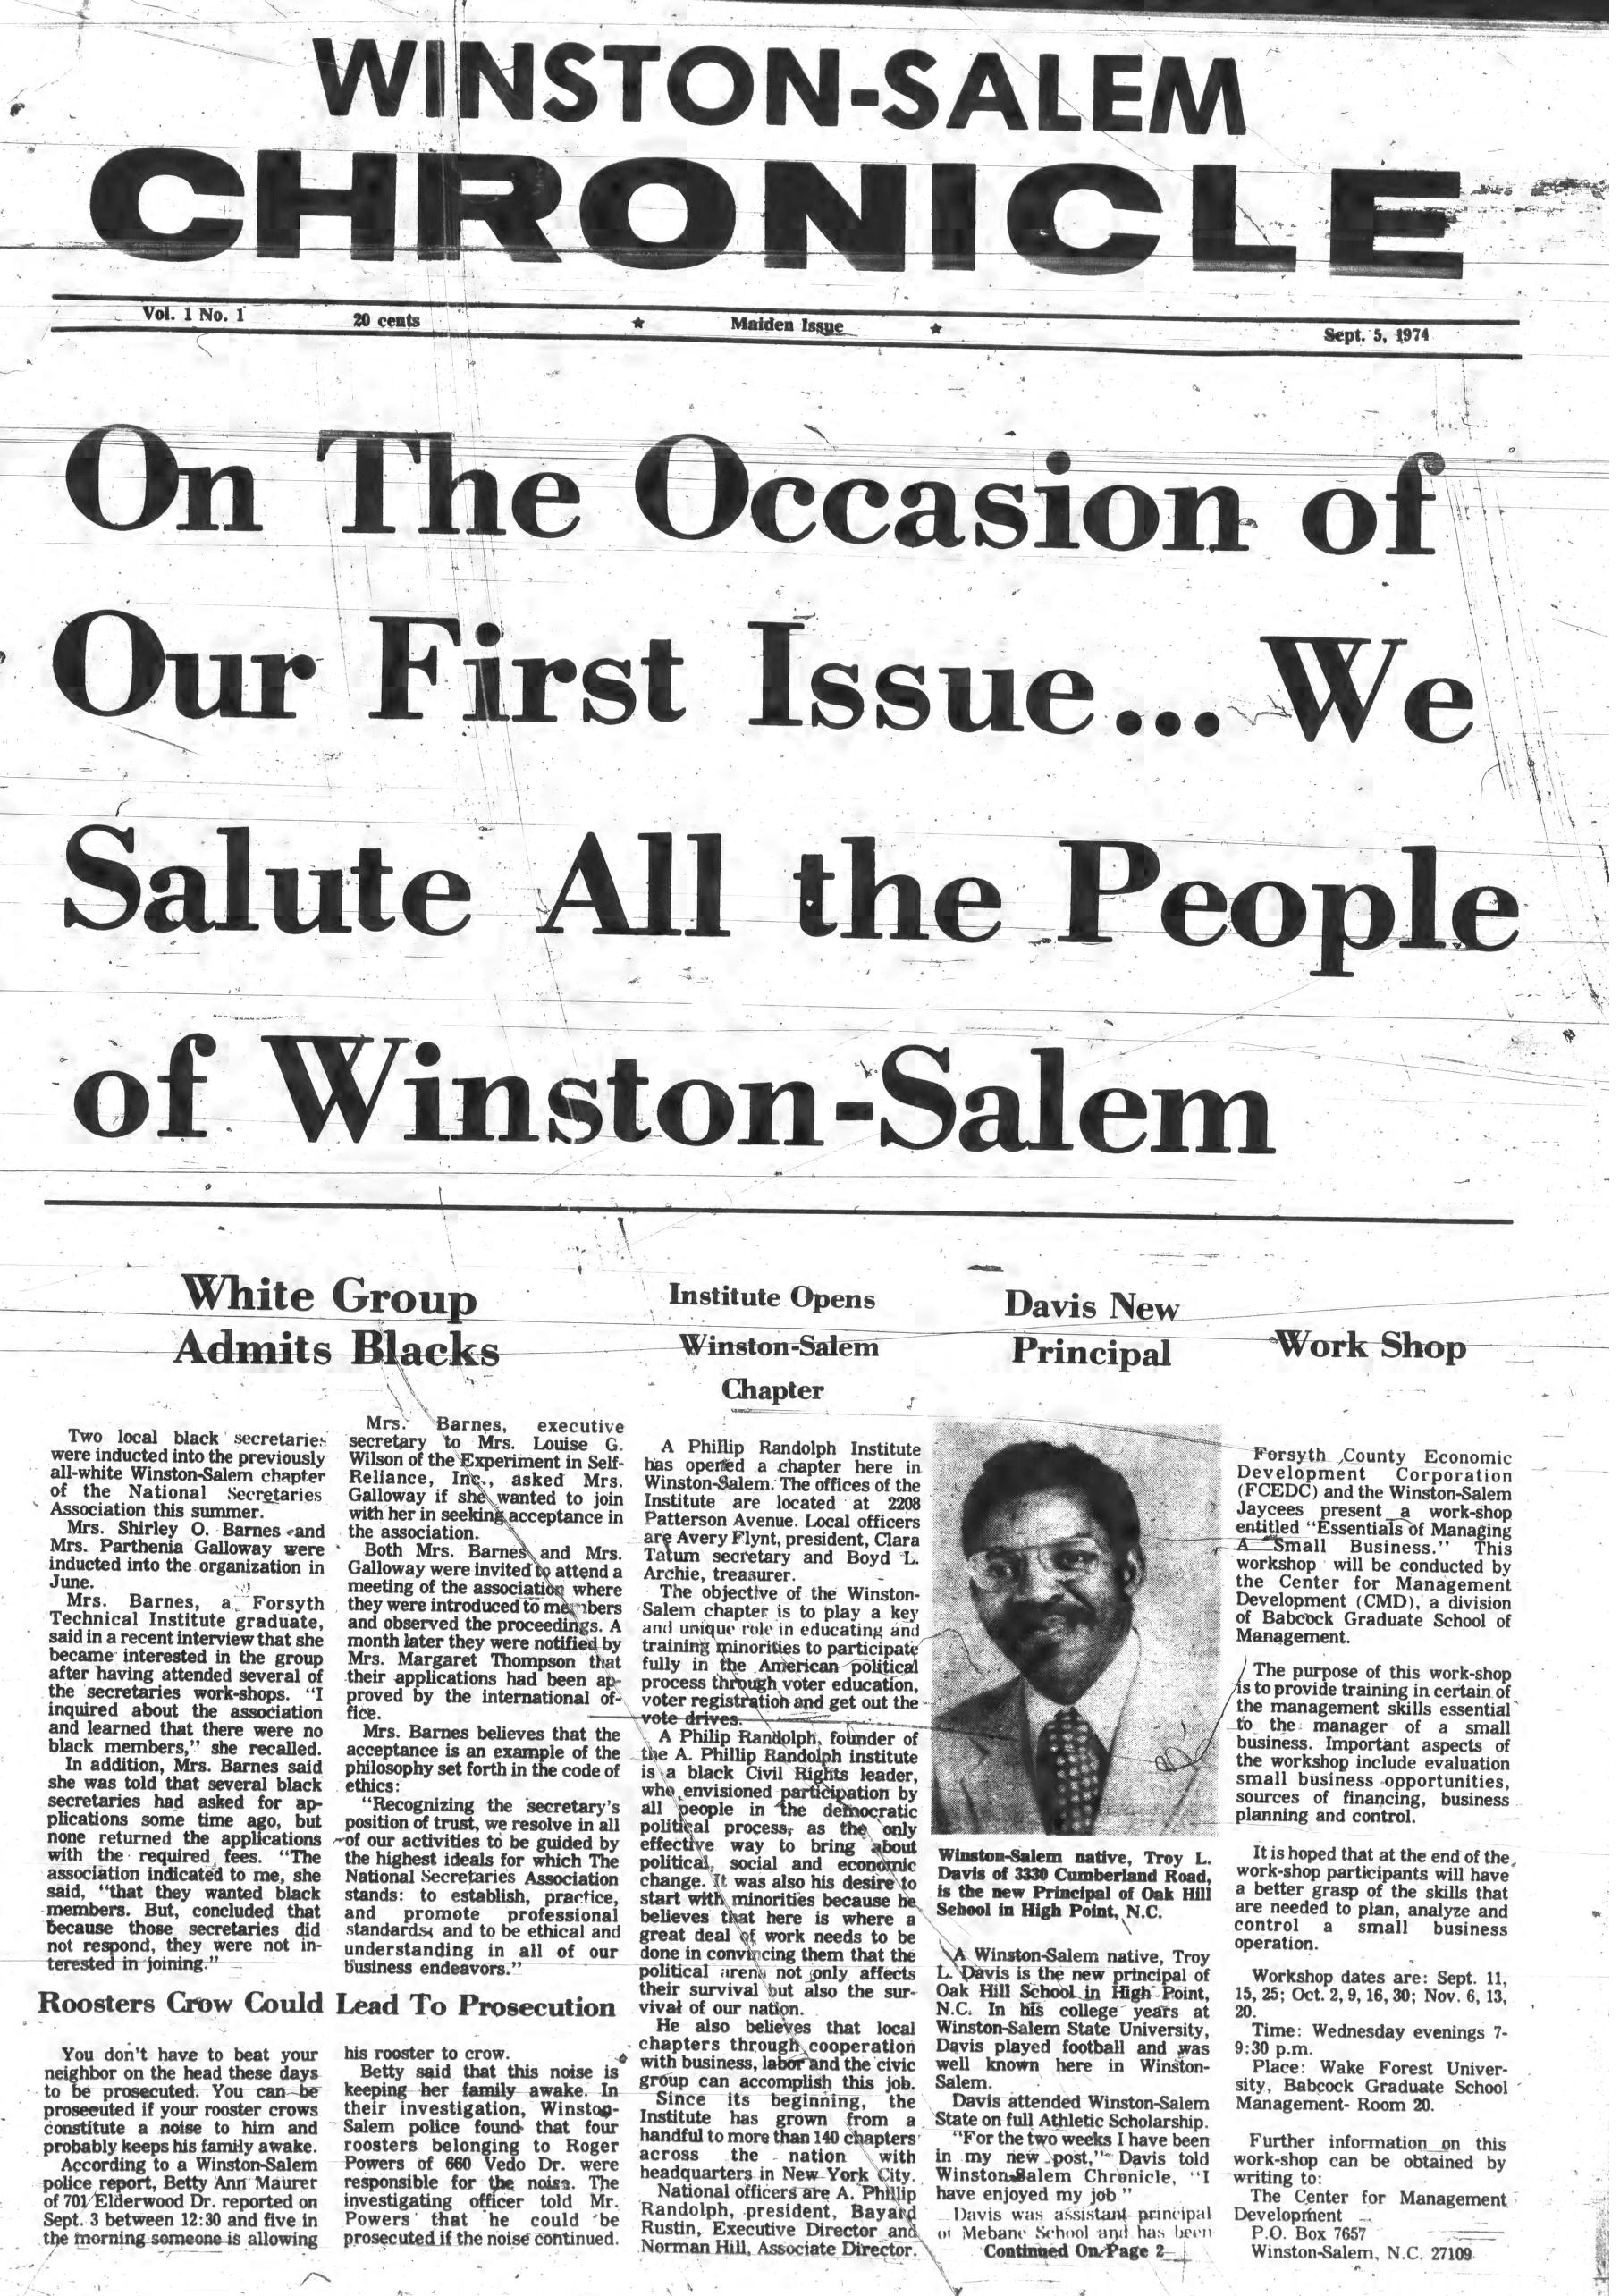 Winston-Salem Chronicle, September 05, 1974, page 1